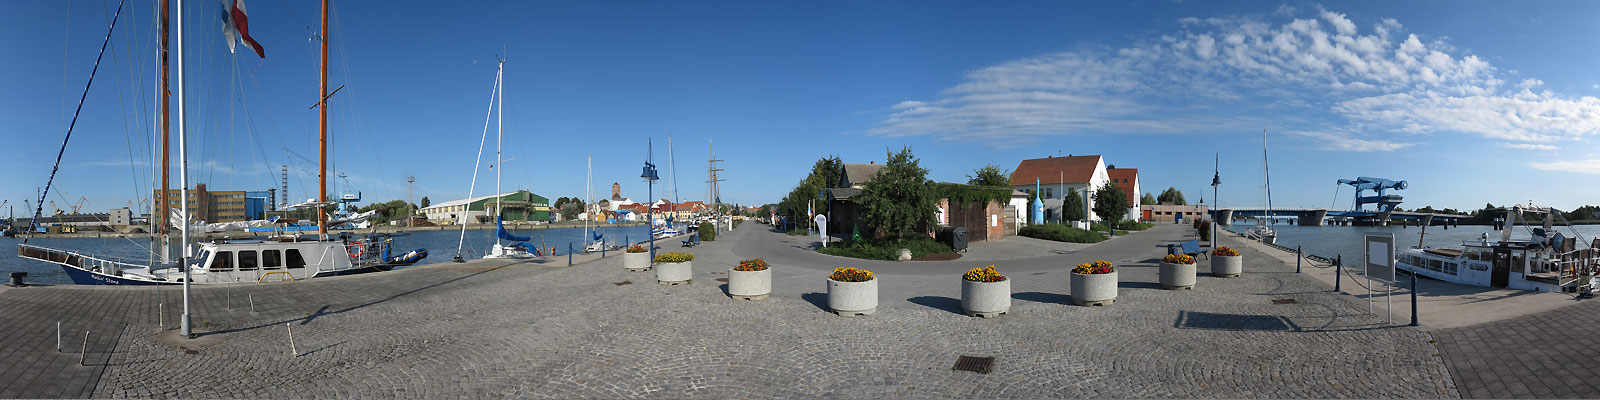 Panorama: Wolgast Hafen - Motivnummer: vor-wol-03